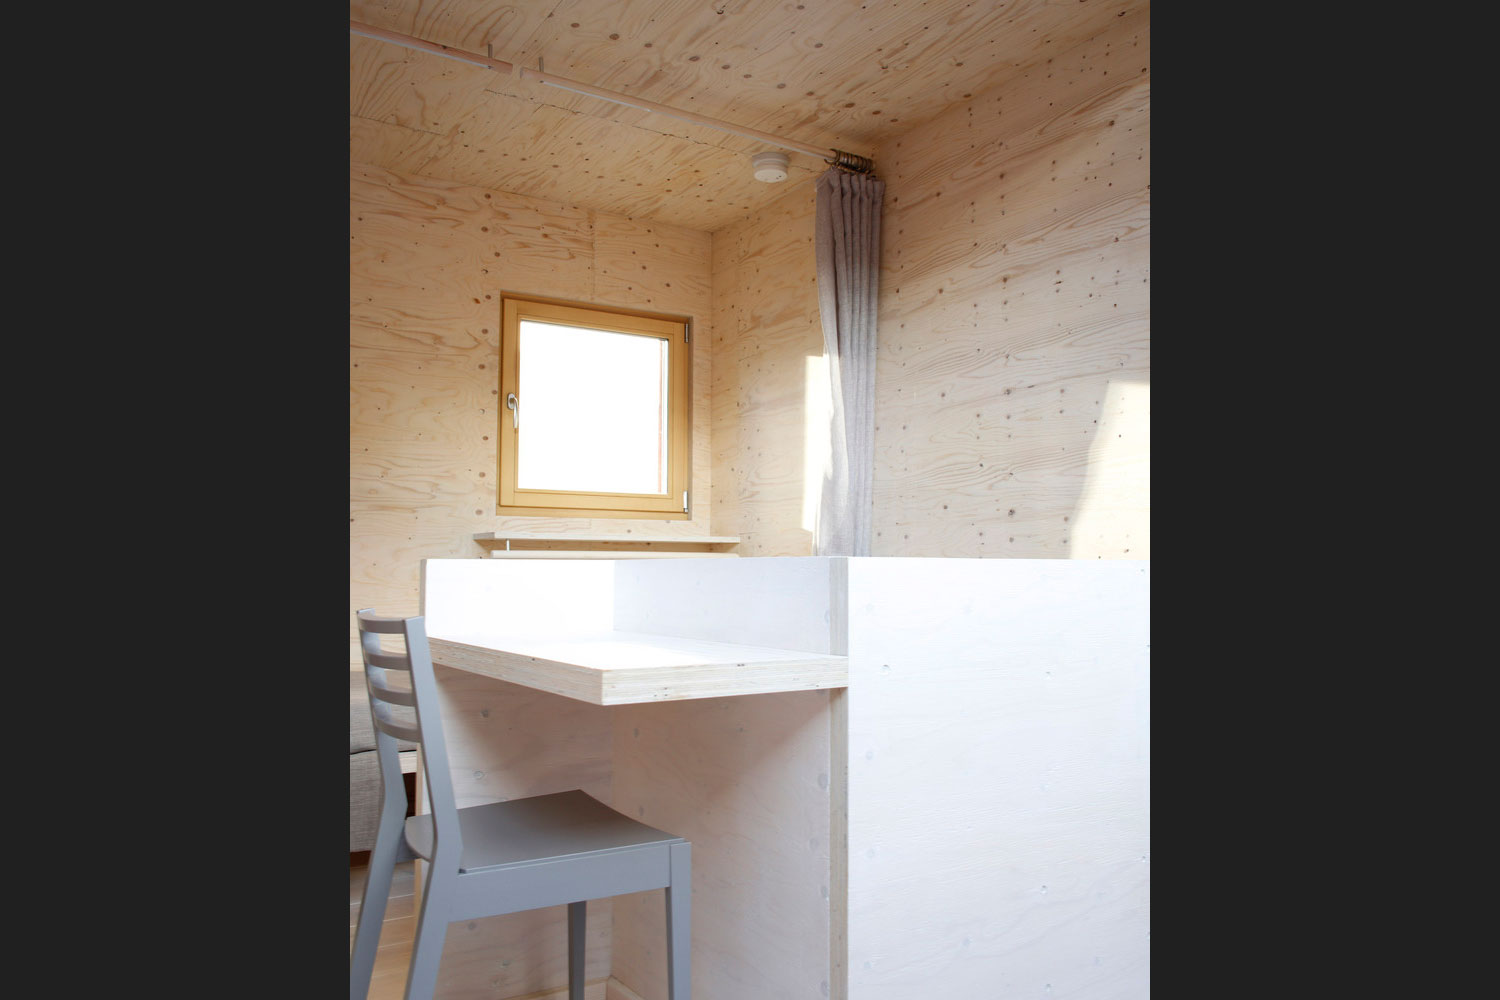 kokoon modular home wood program studio 006